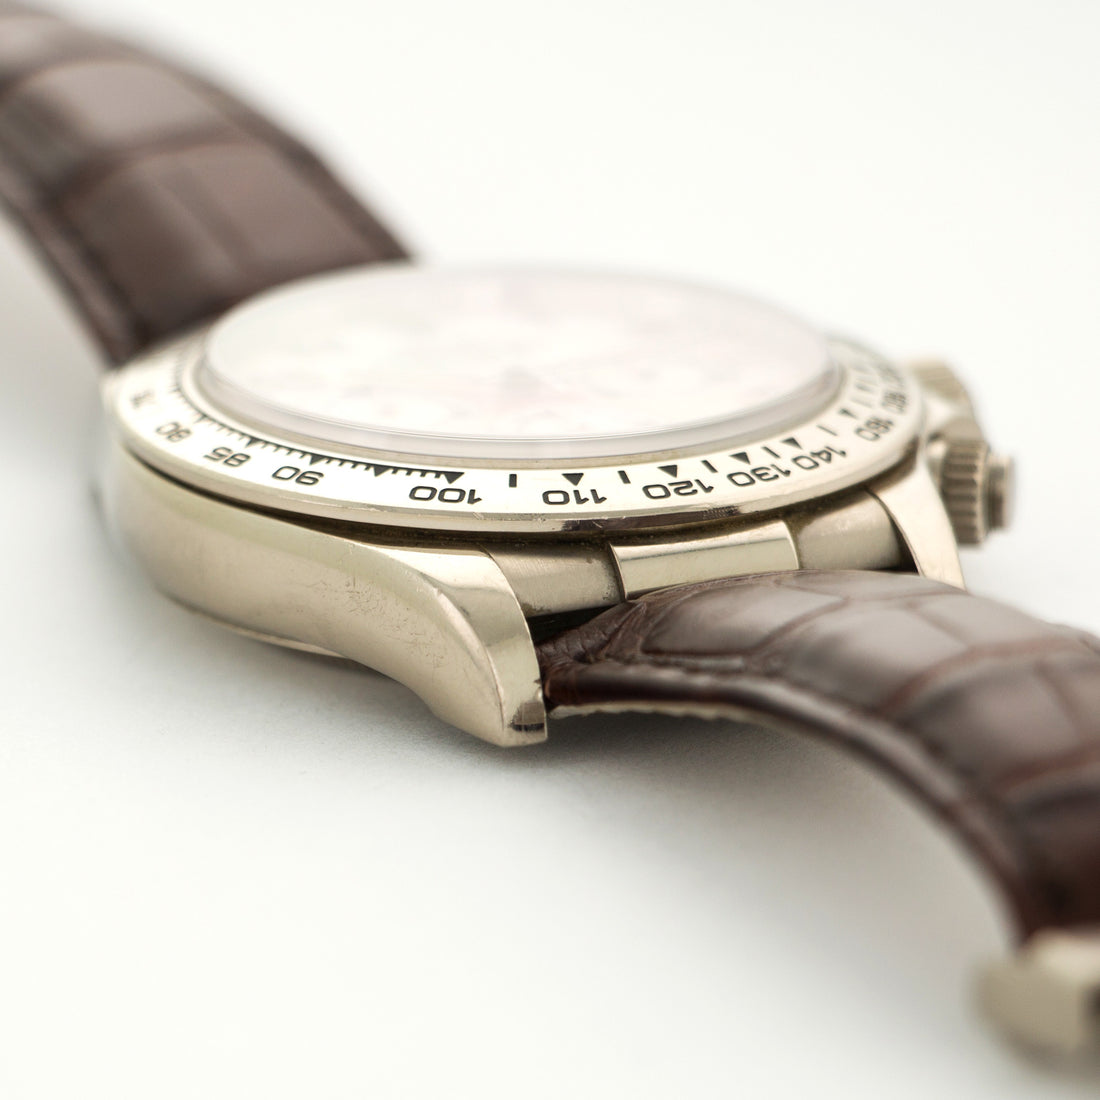 Rolex White Gold Daytona Zenith Watch Ref. 16519